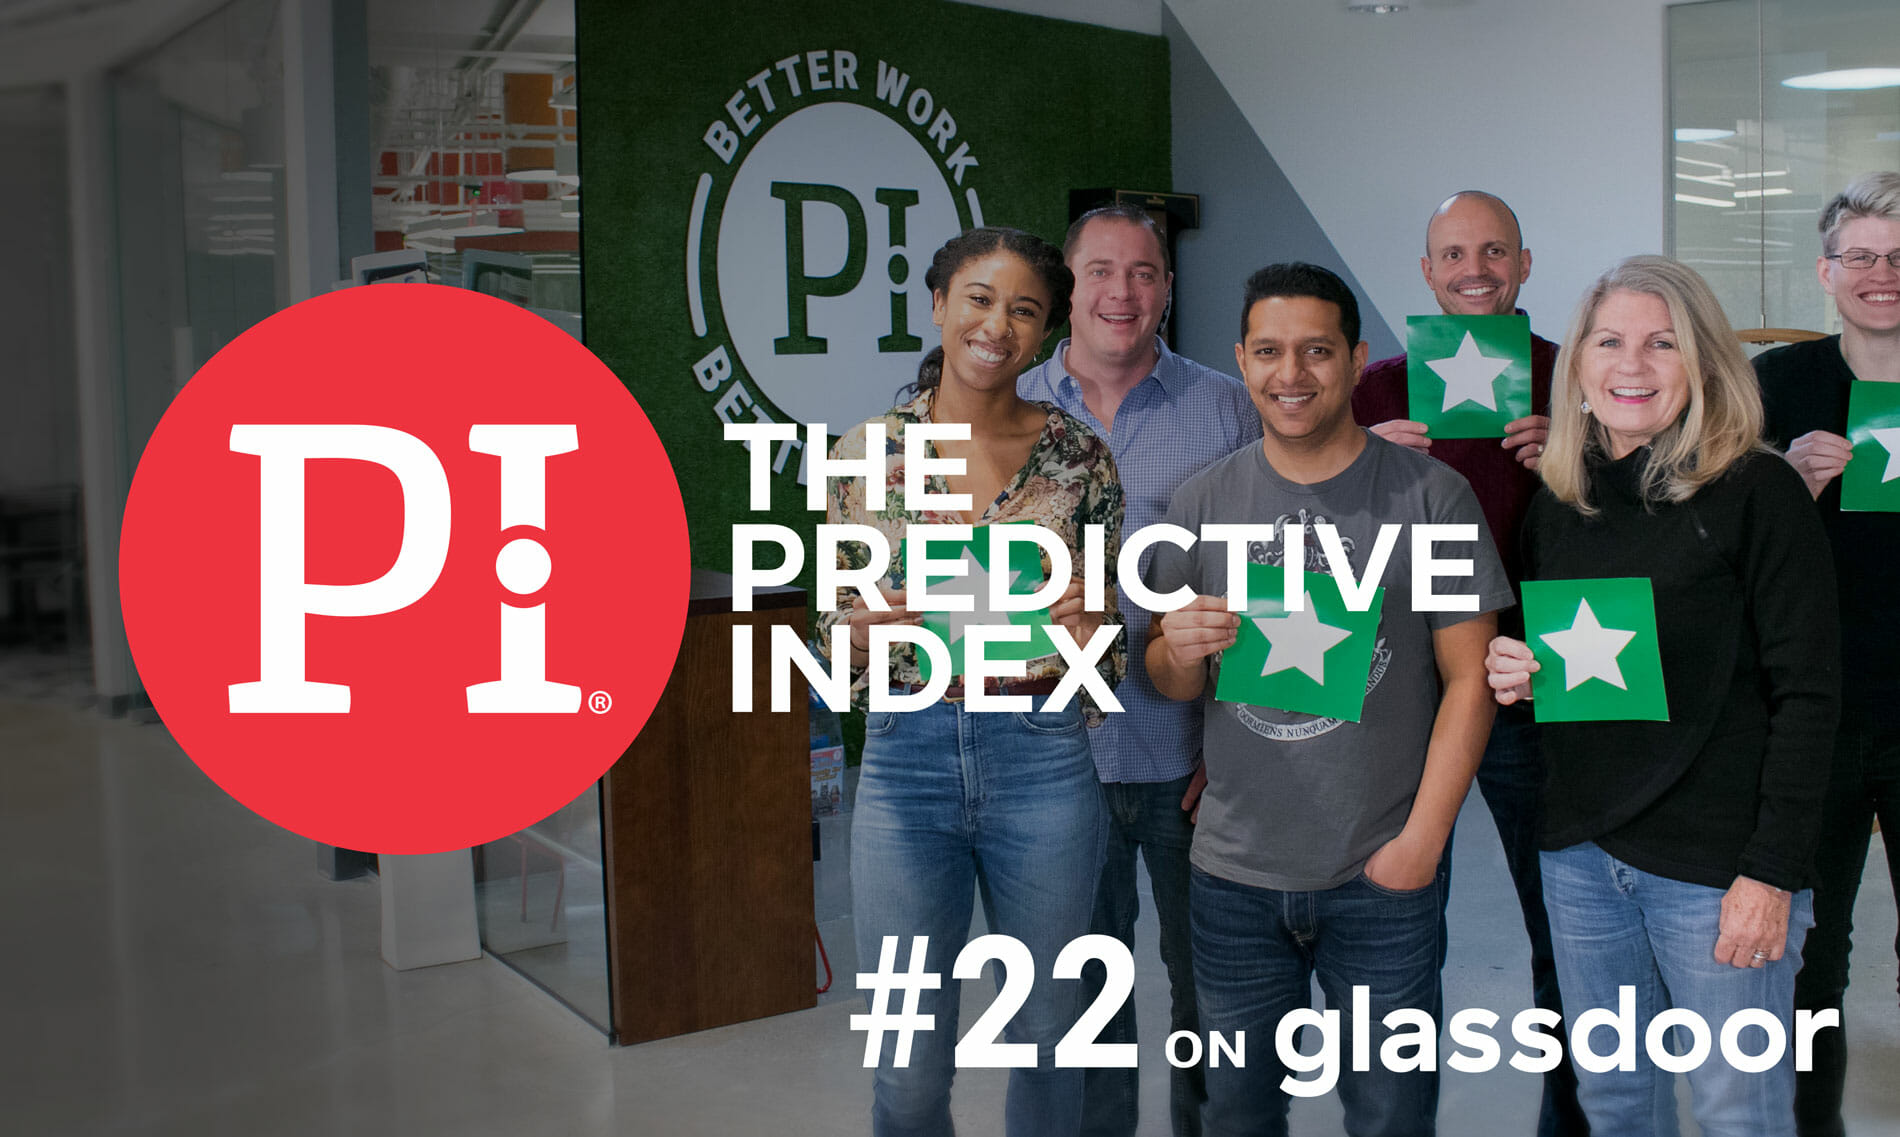 3 ways to improve your Glassdoor rating | The Predictive Index